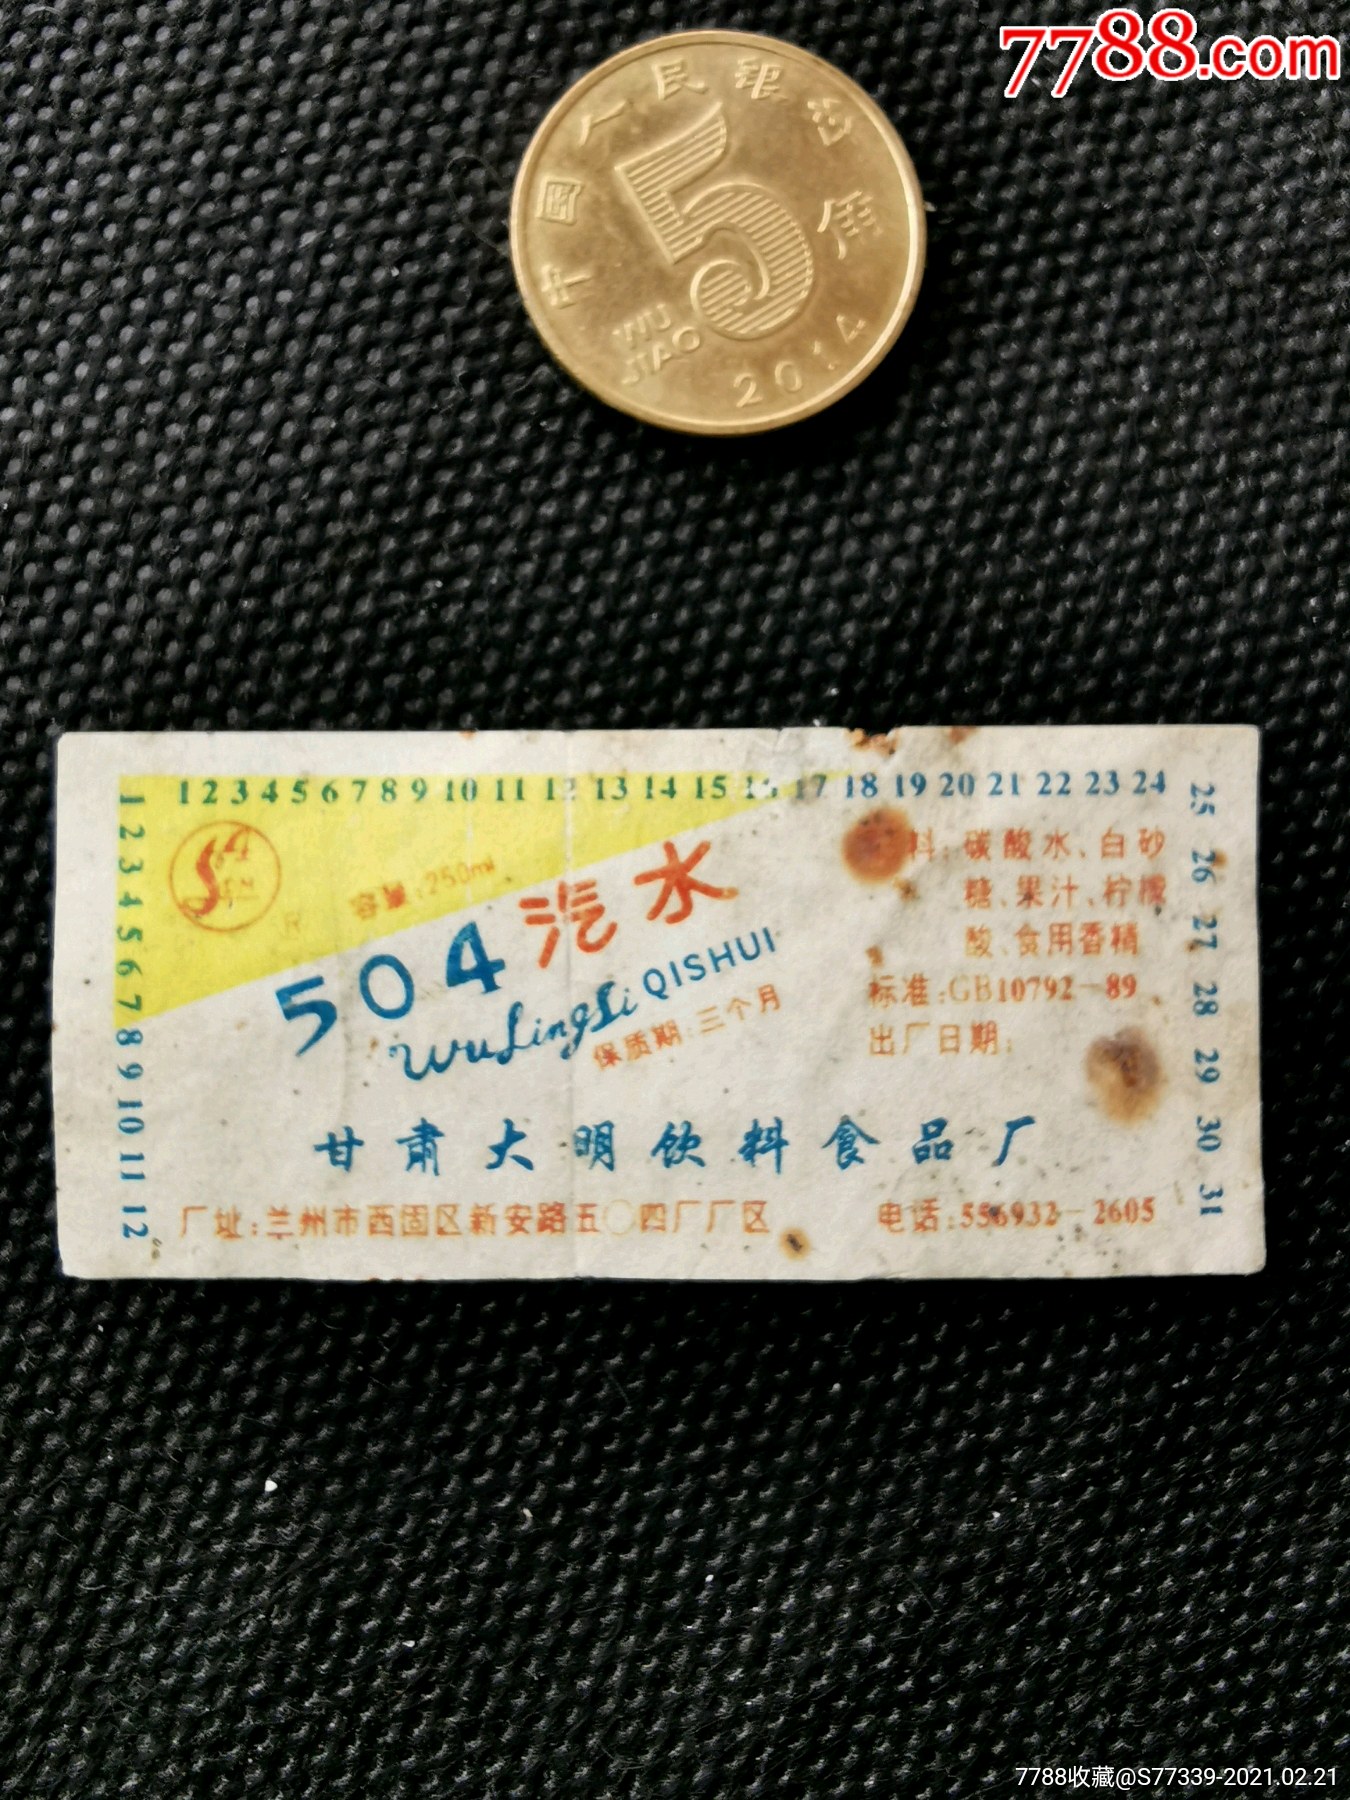 中国兰州504饮料图片